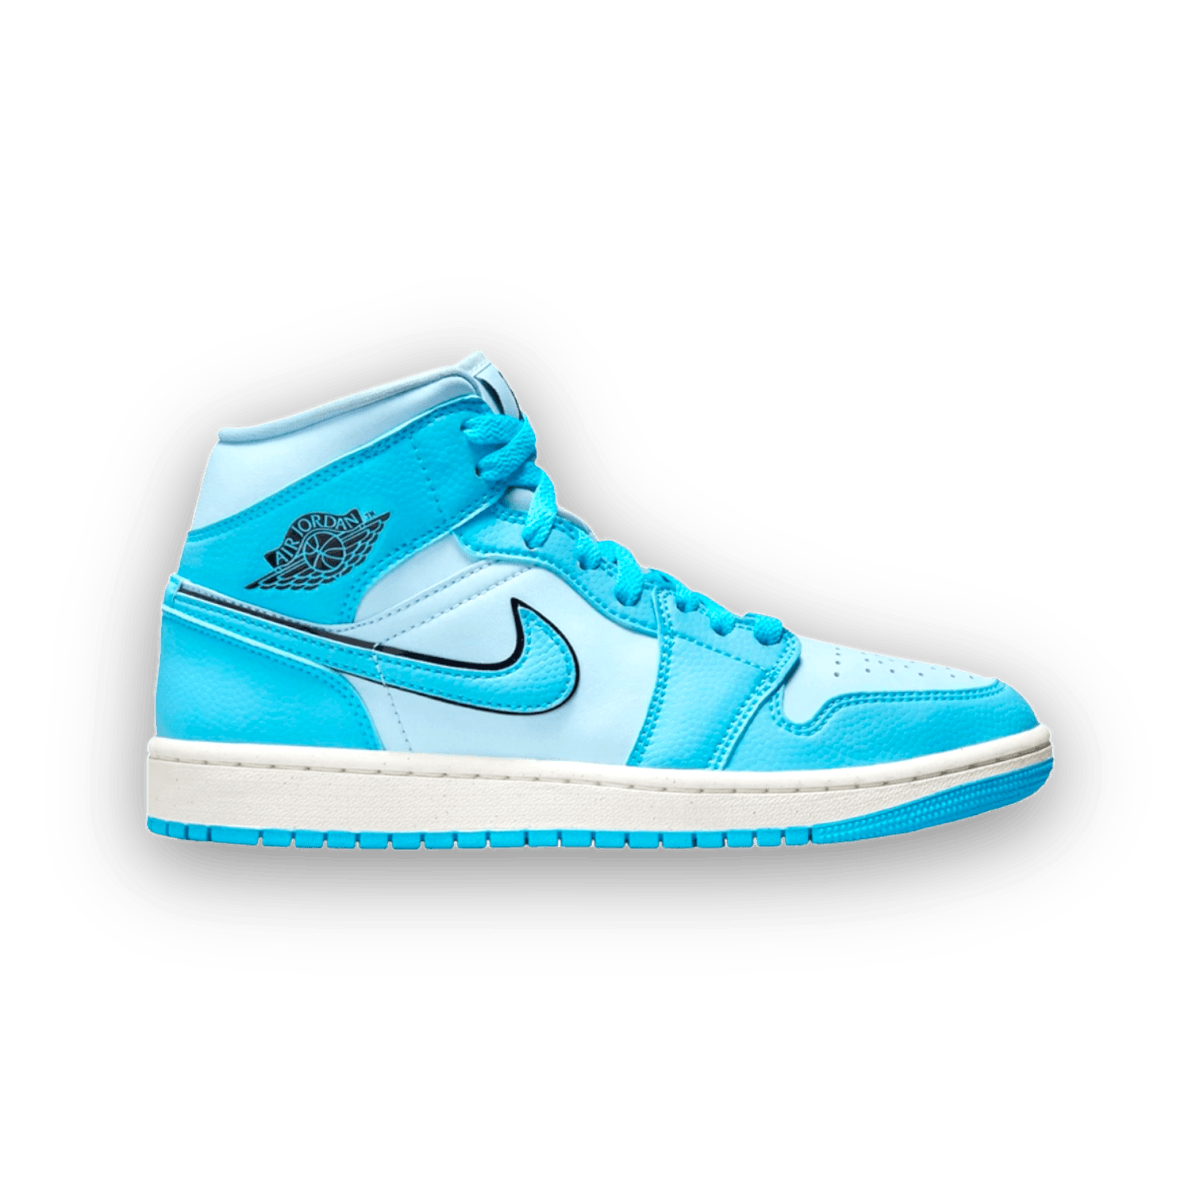 Jordan 1 Mid Ice Blue - Women - Mid Sneaker - Jawns on Fire Sneakers & Streetwear